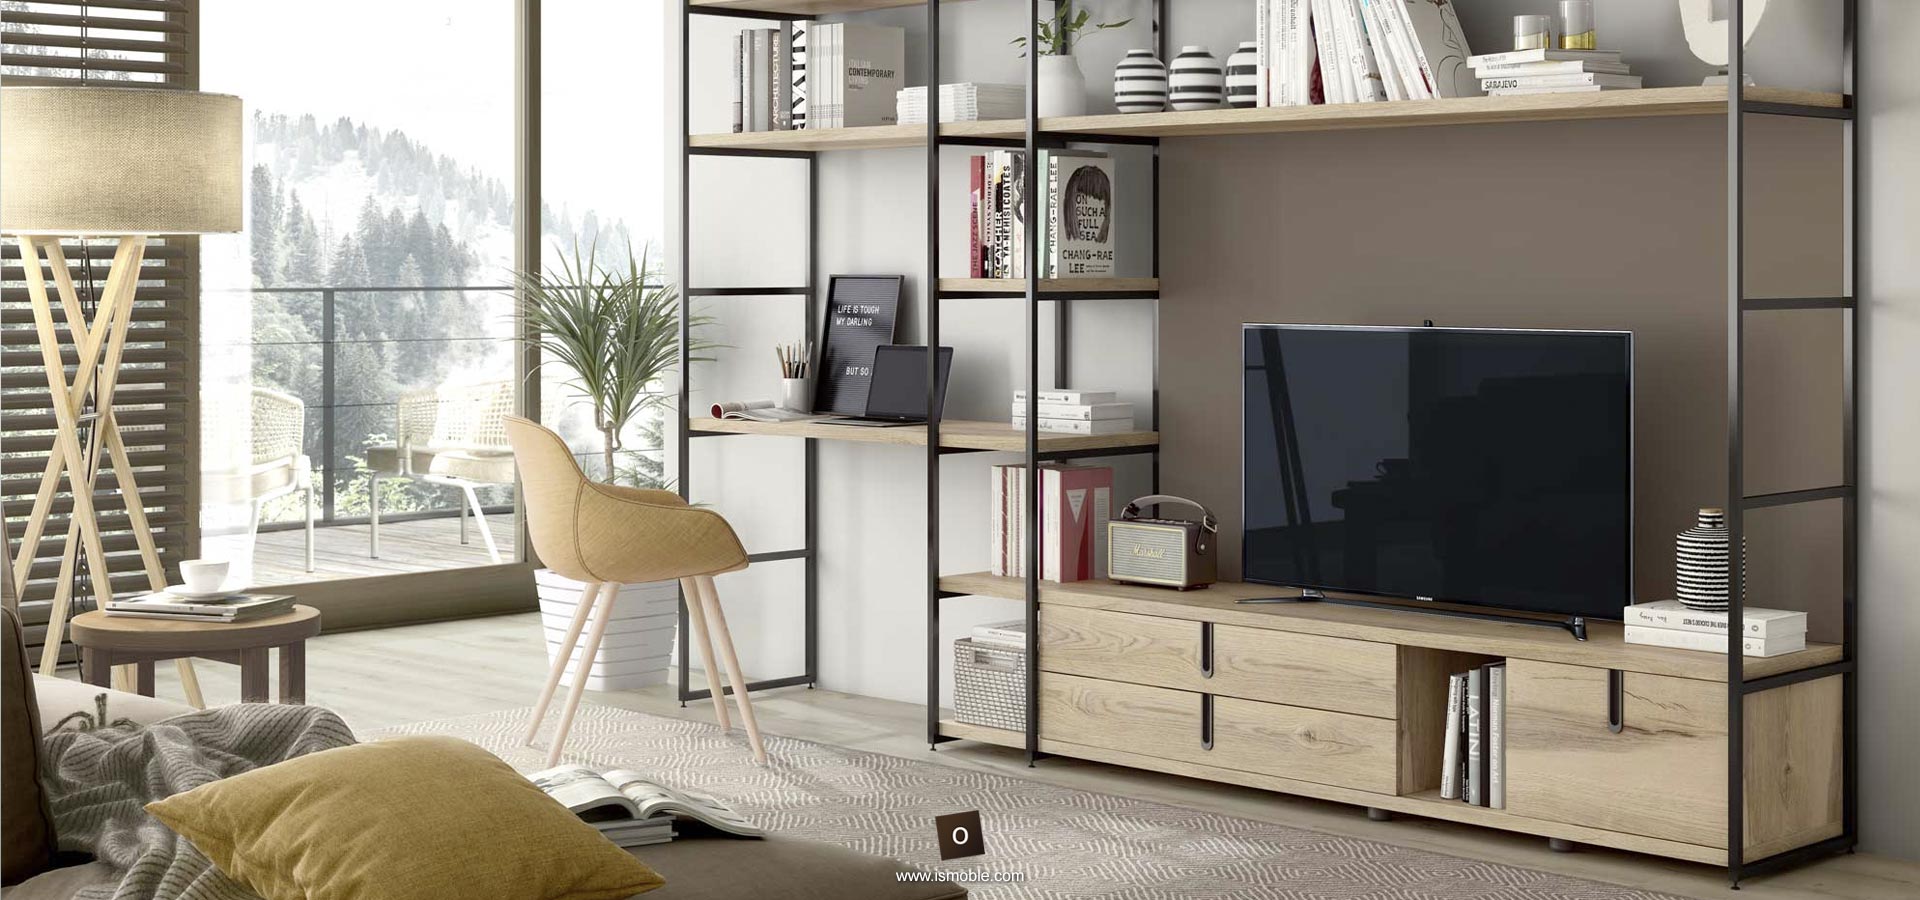 Detall moble tv modular amb llibreria i tv